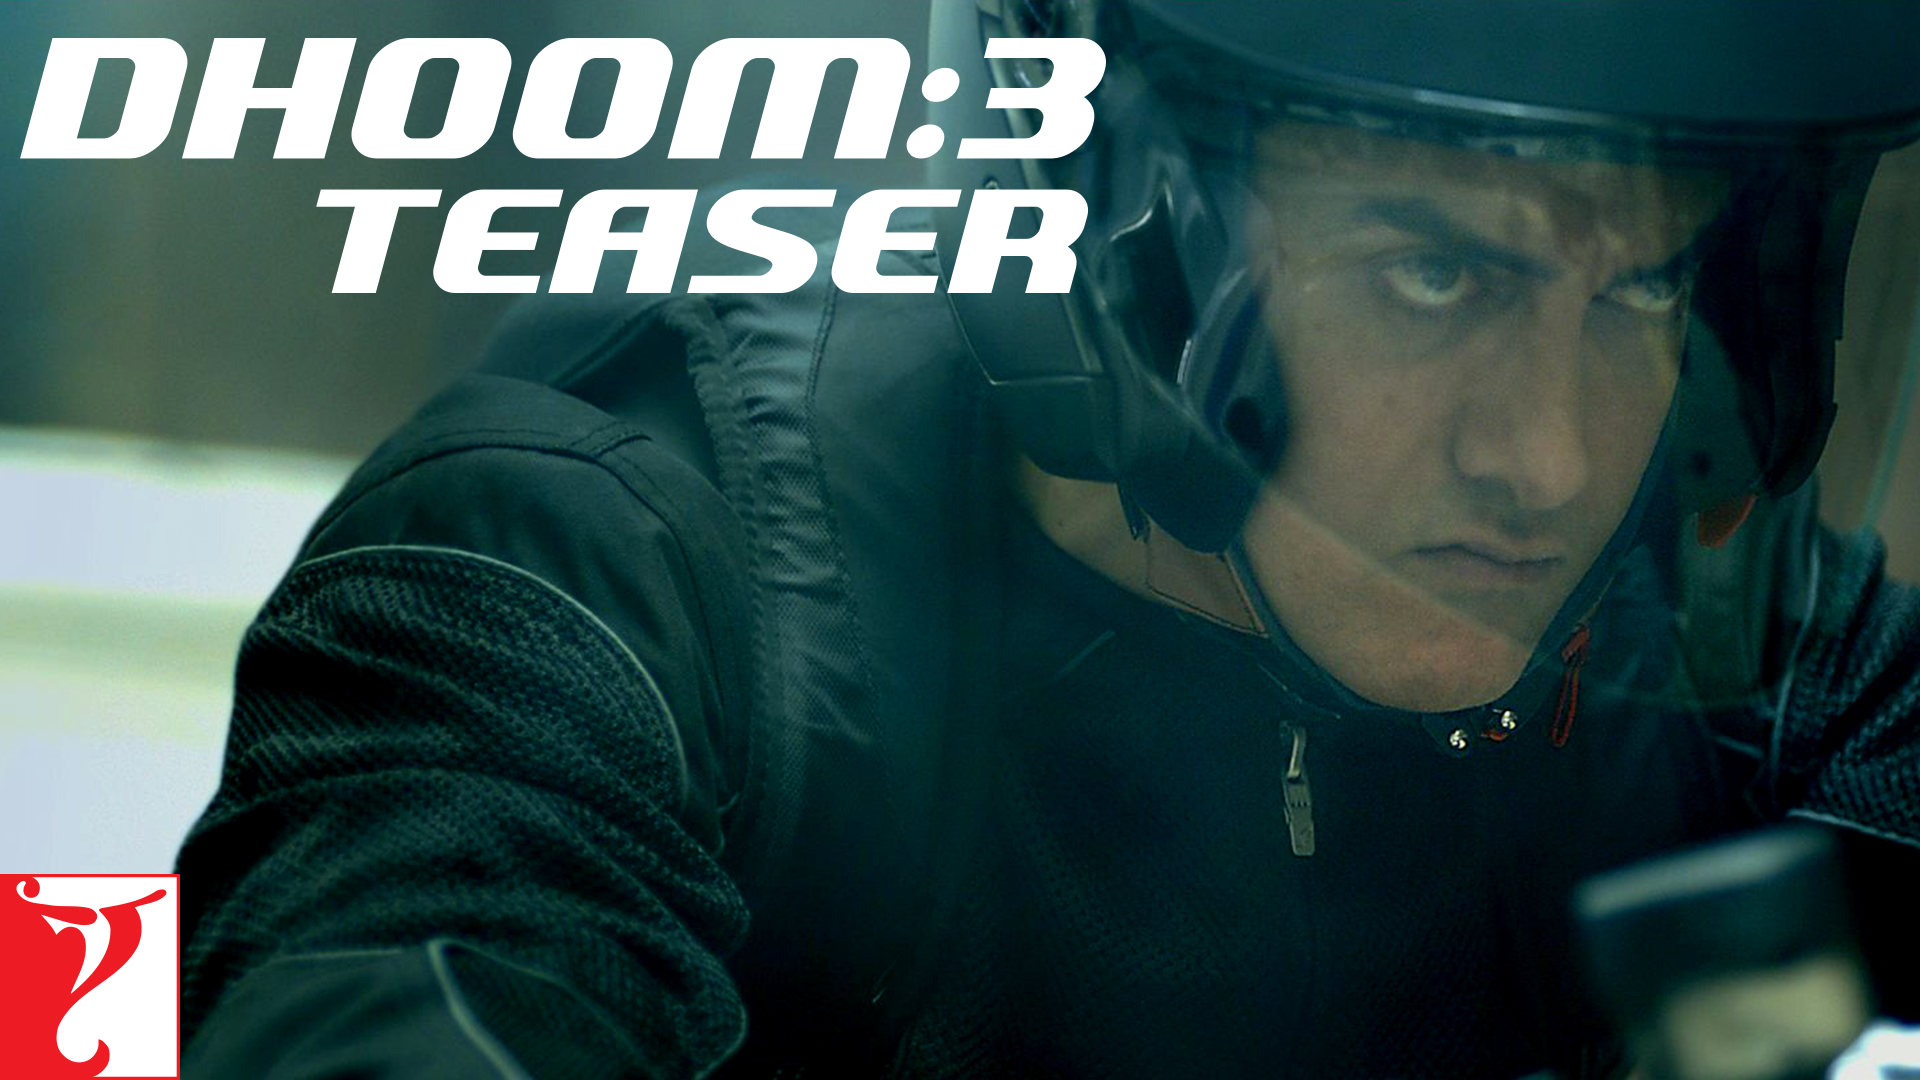 Dhoom 3 - Teaser Image